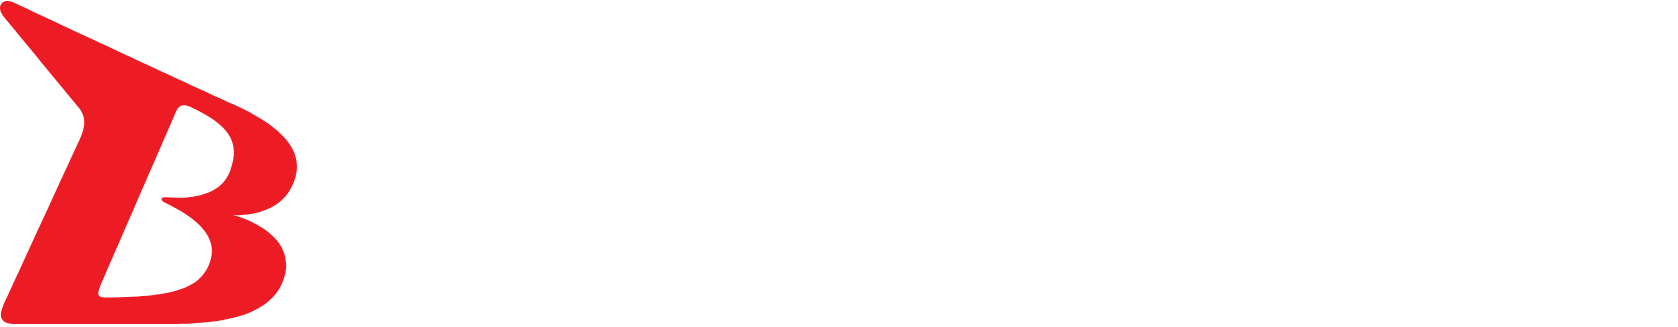 Bushiroad logo large for dark backgrounds (transparent PNG)